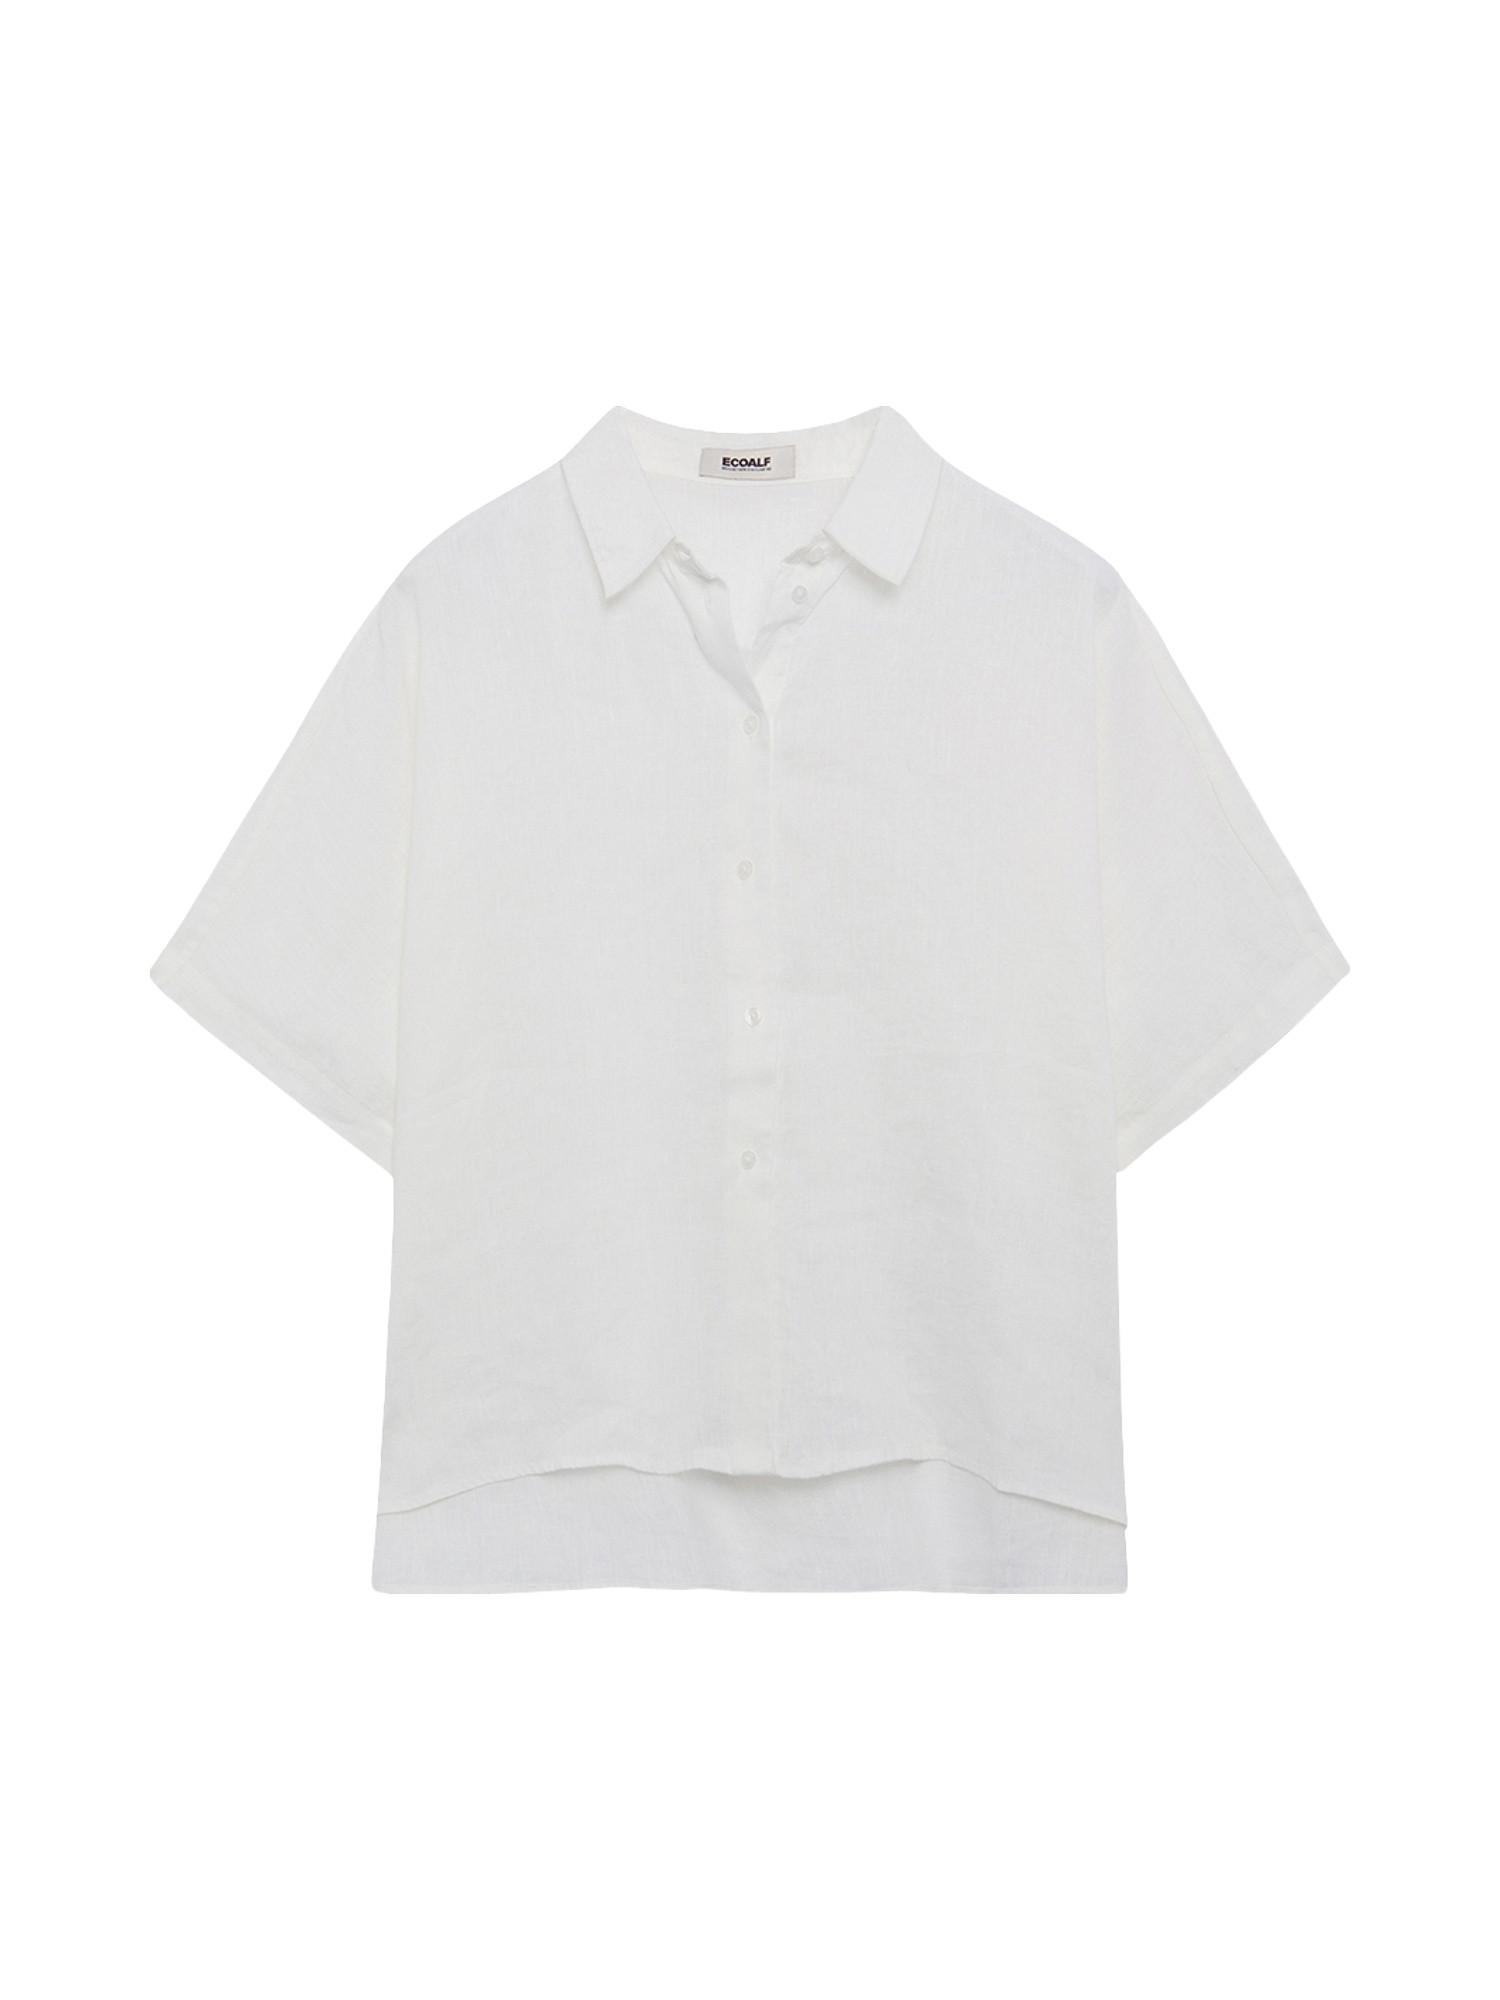 Ecoalf - Melania oversized shirt, White, large image number 0